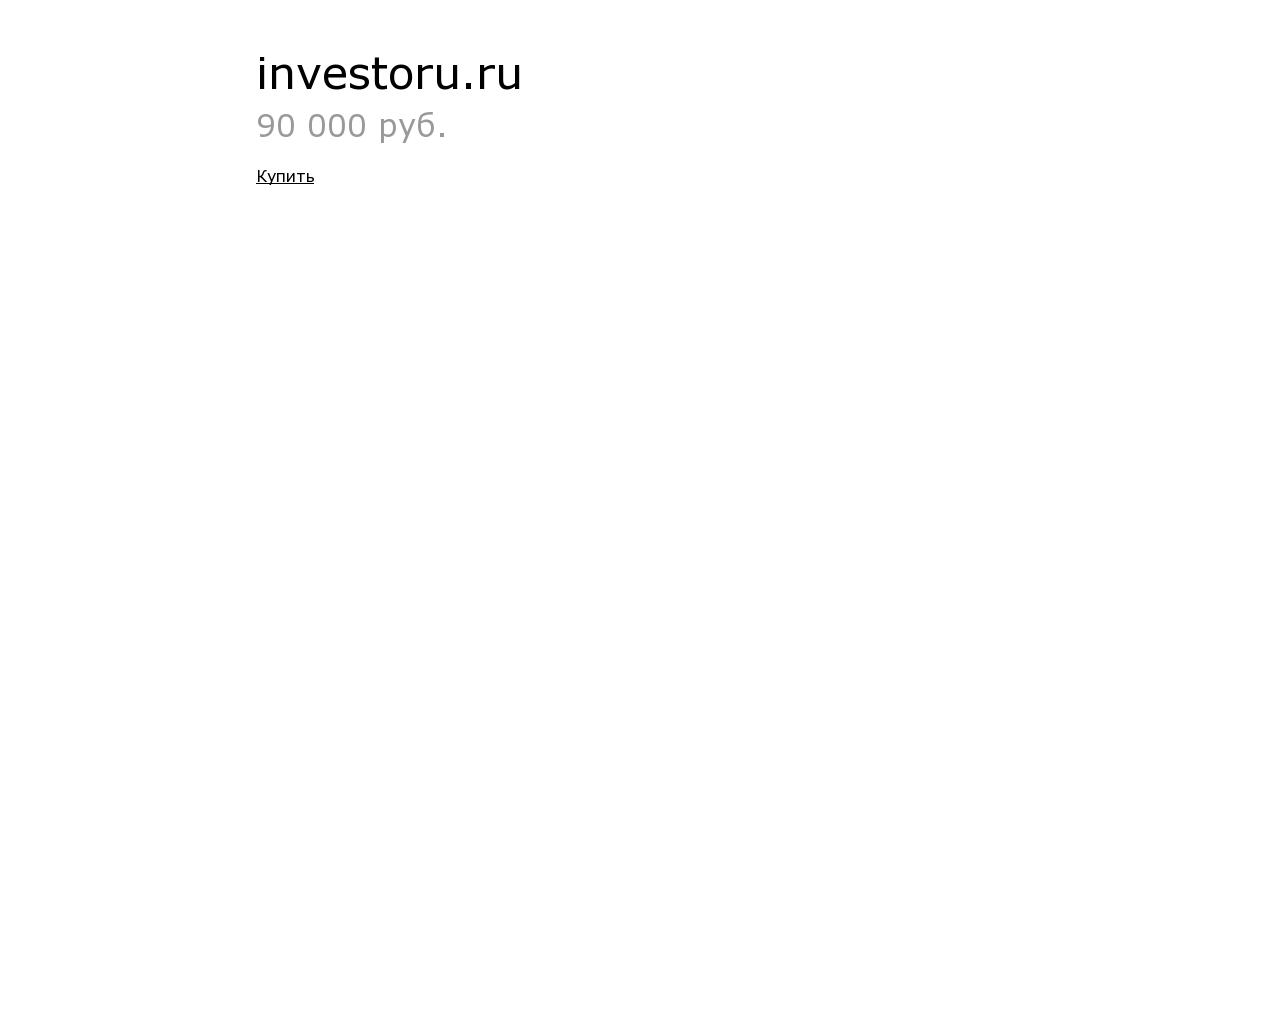 Изображение сайта investoru.ru в разрешении 1280x1024